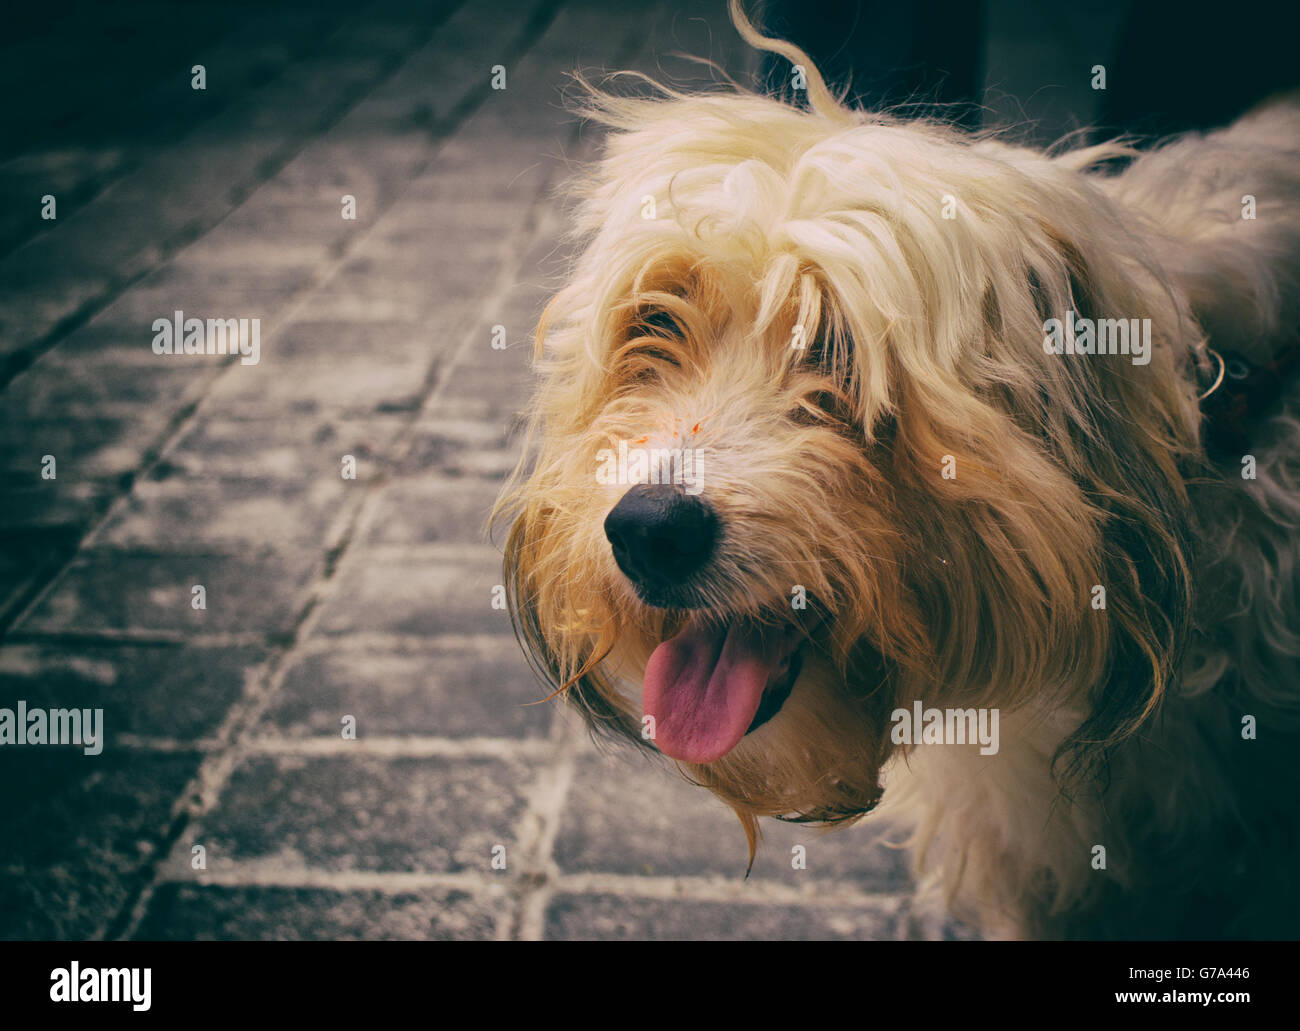 Photographie d'un chien sur un plancher de béton Banque D'Images